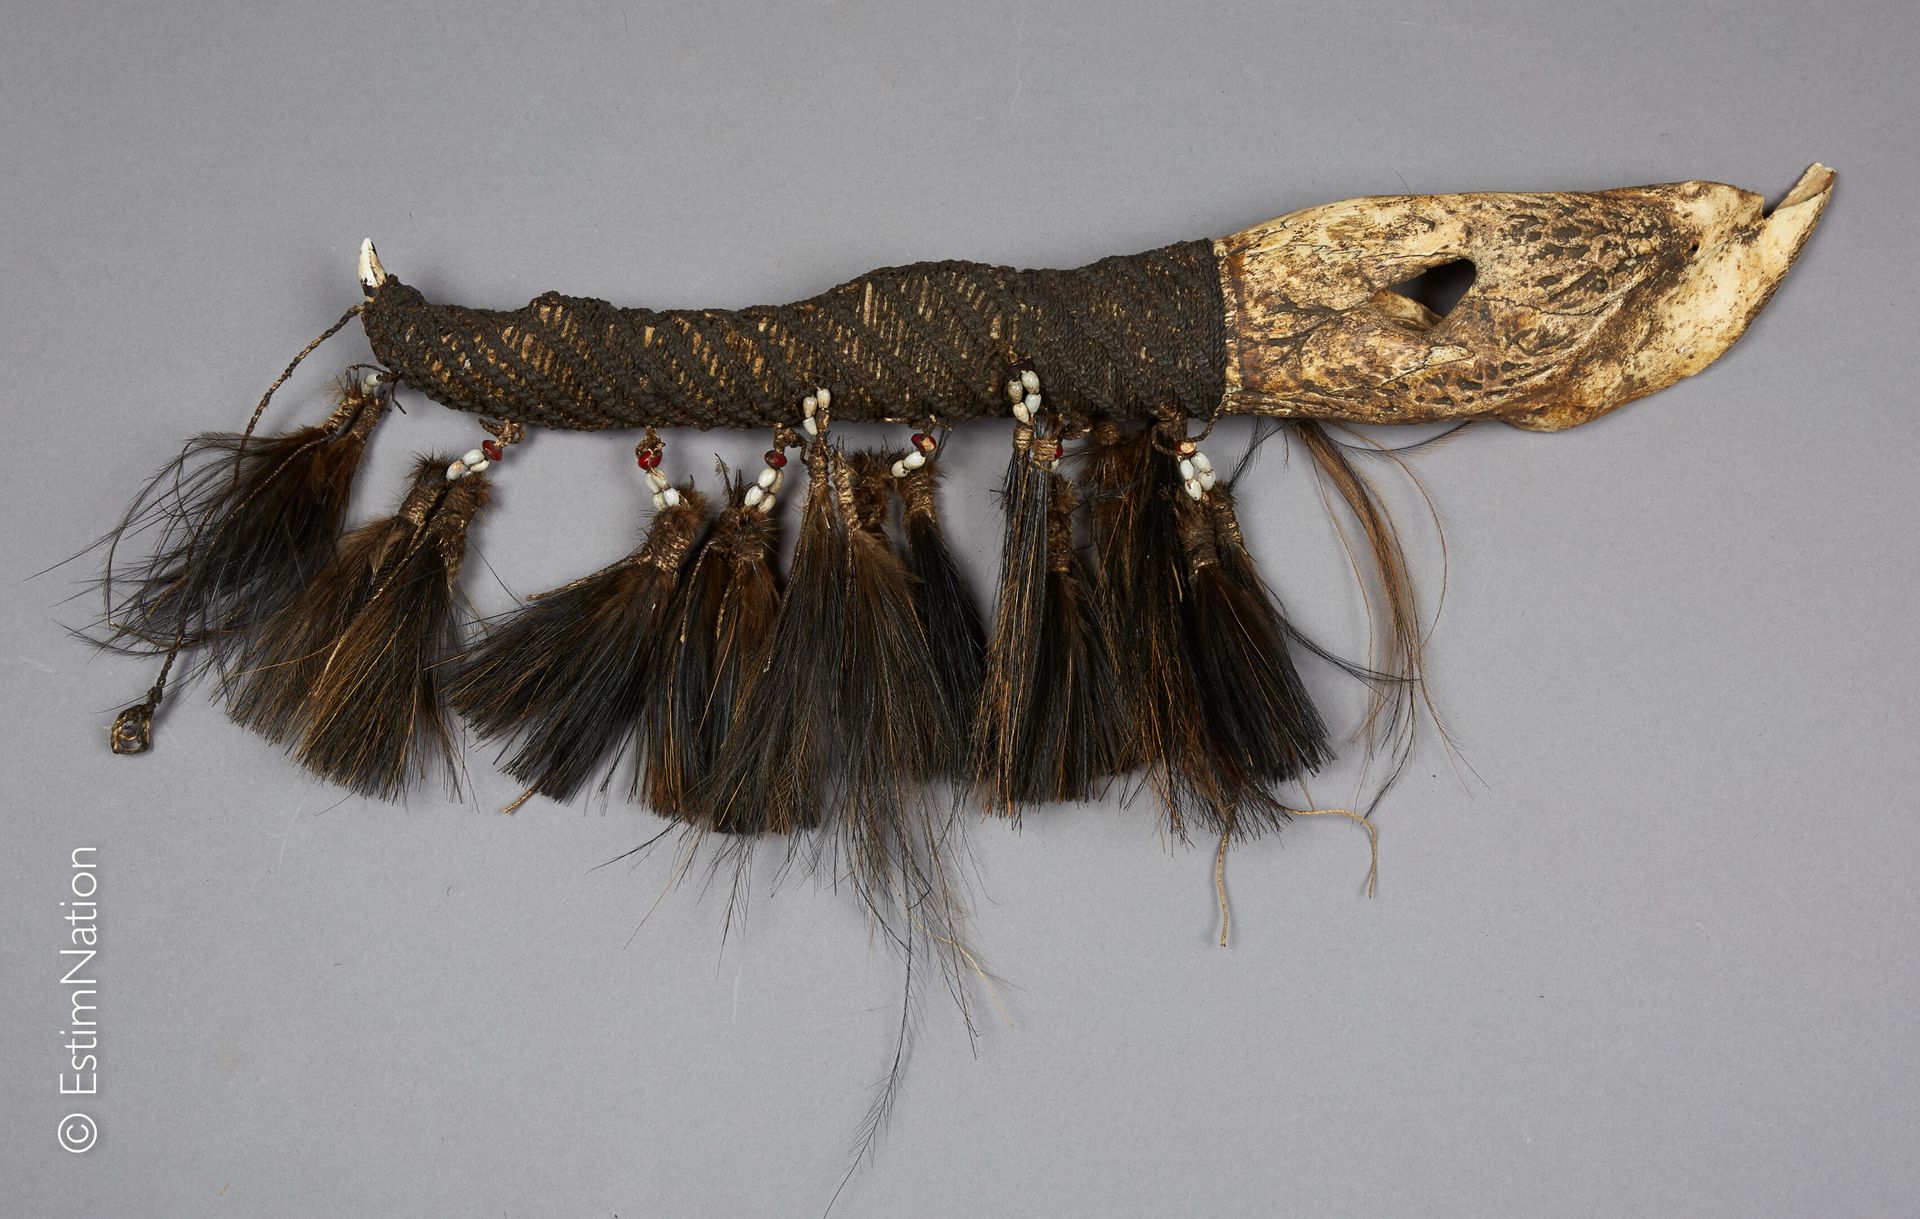 IRIAN JAYA - ASMAT 伊里安-贾亚-阿斯马特



鳄鱼颌骨匕首，装饰有编织绳、沙袋鼠羽毛和种子



长度：55厘米 - 宽度：9厘米

(小&hellip;